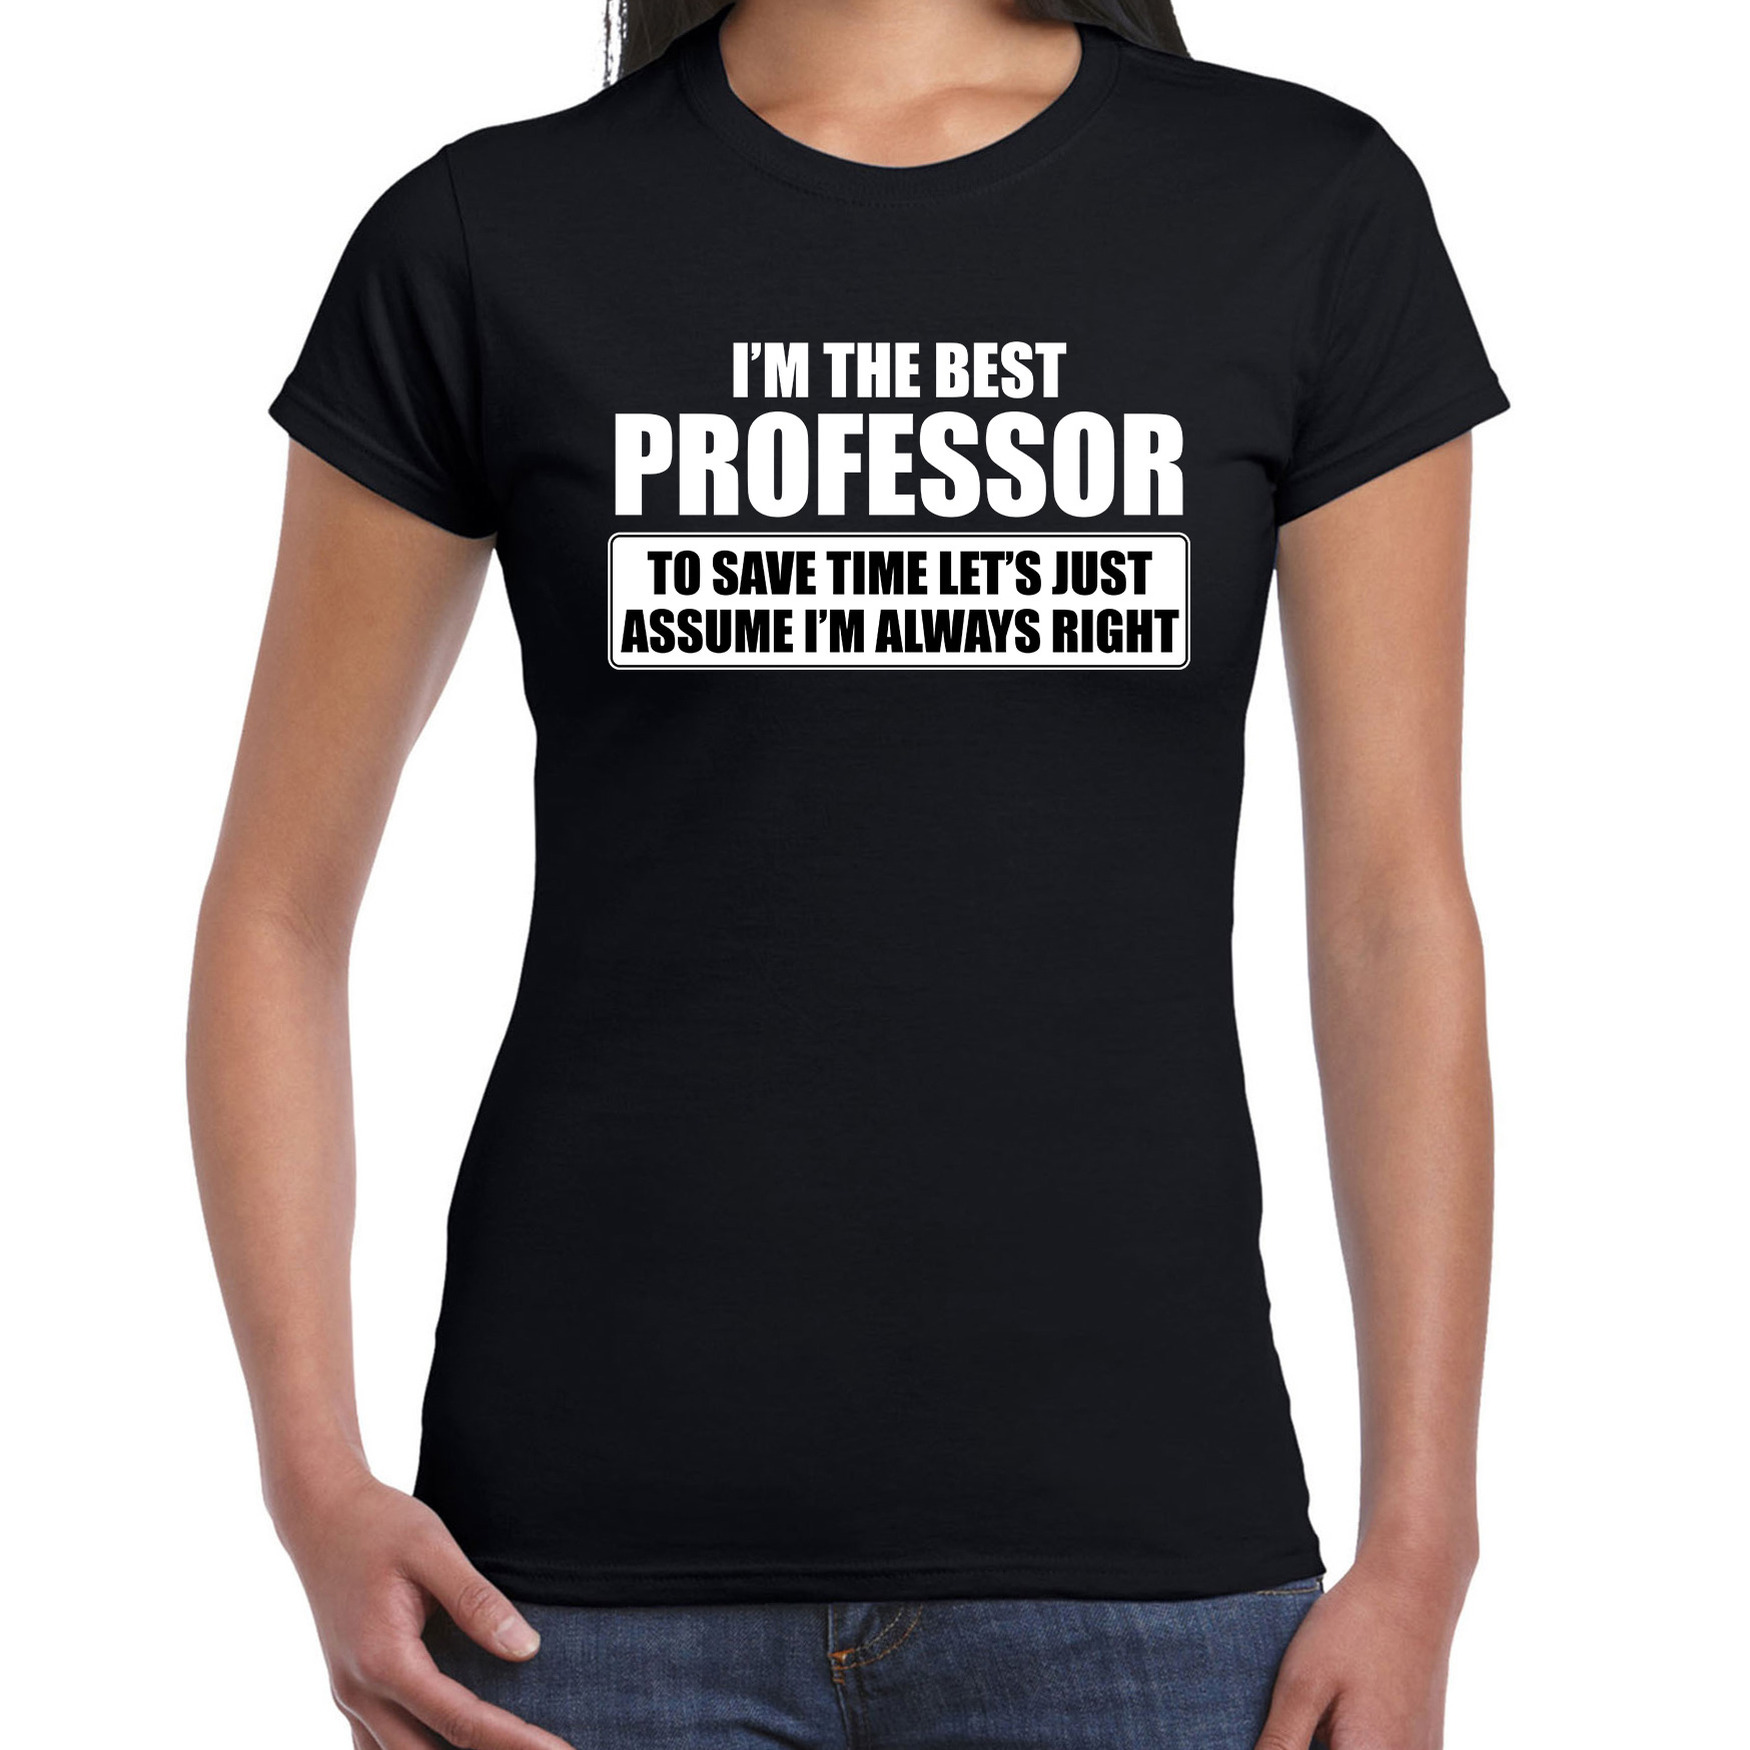 I'm the best professor t-shirt zwart dames De beste professor cadeau